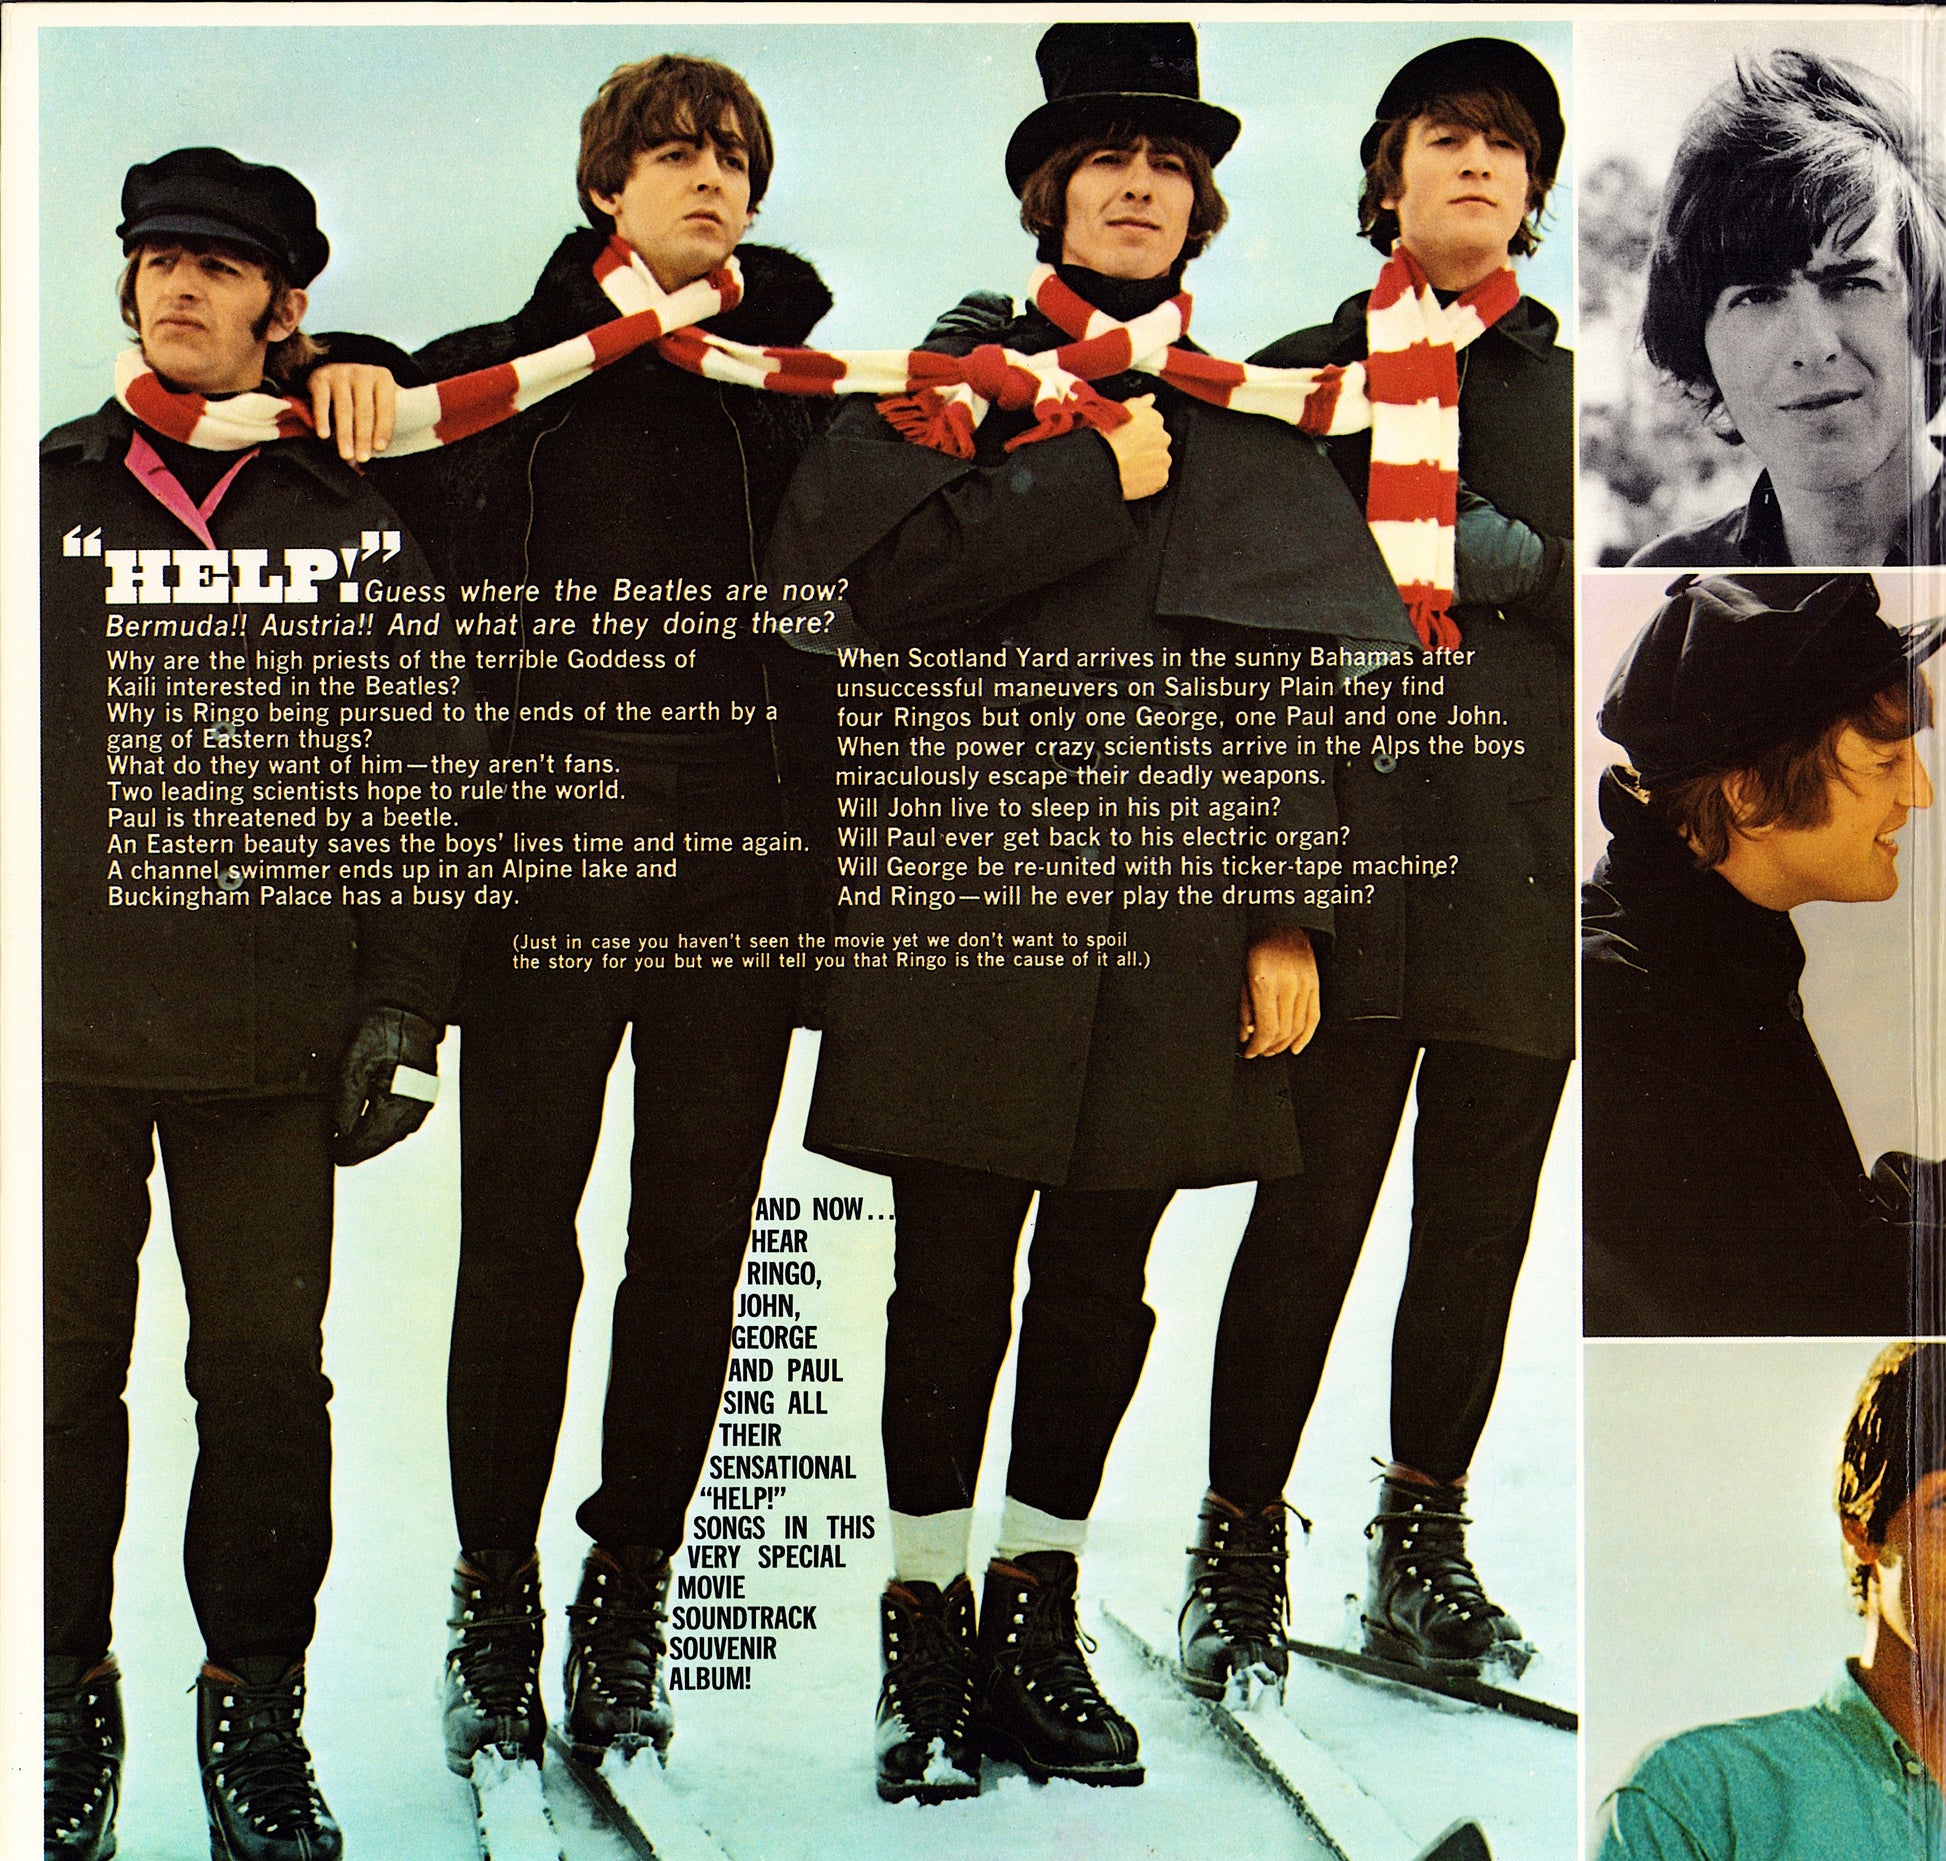 The Beatles - Help! Original Motion Picture Soundtrack Vinyl LP